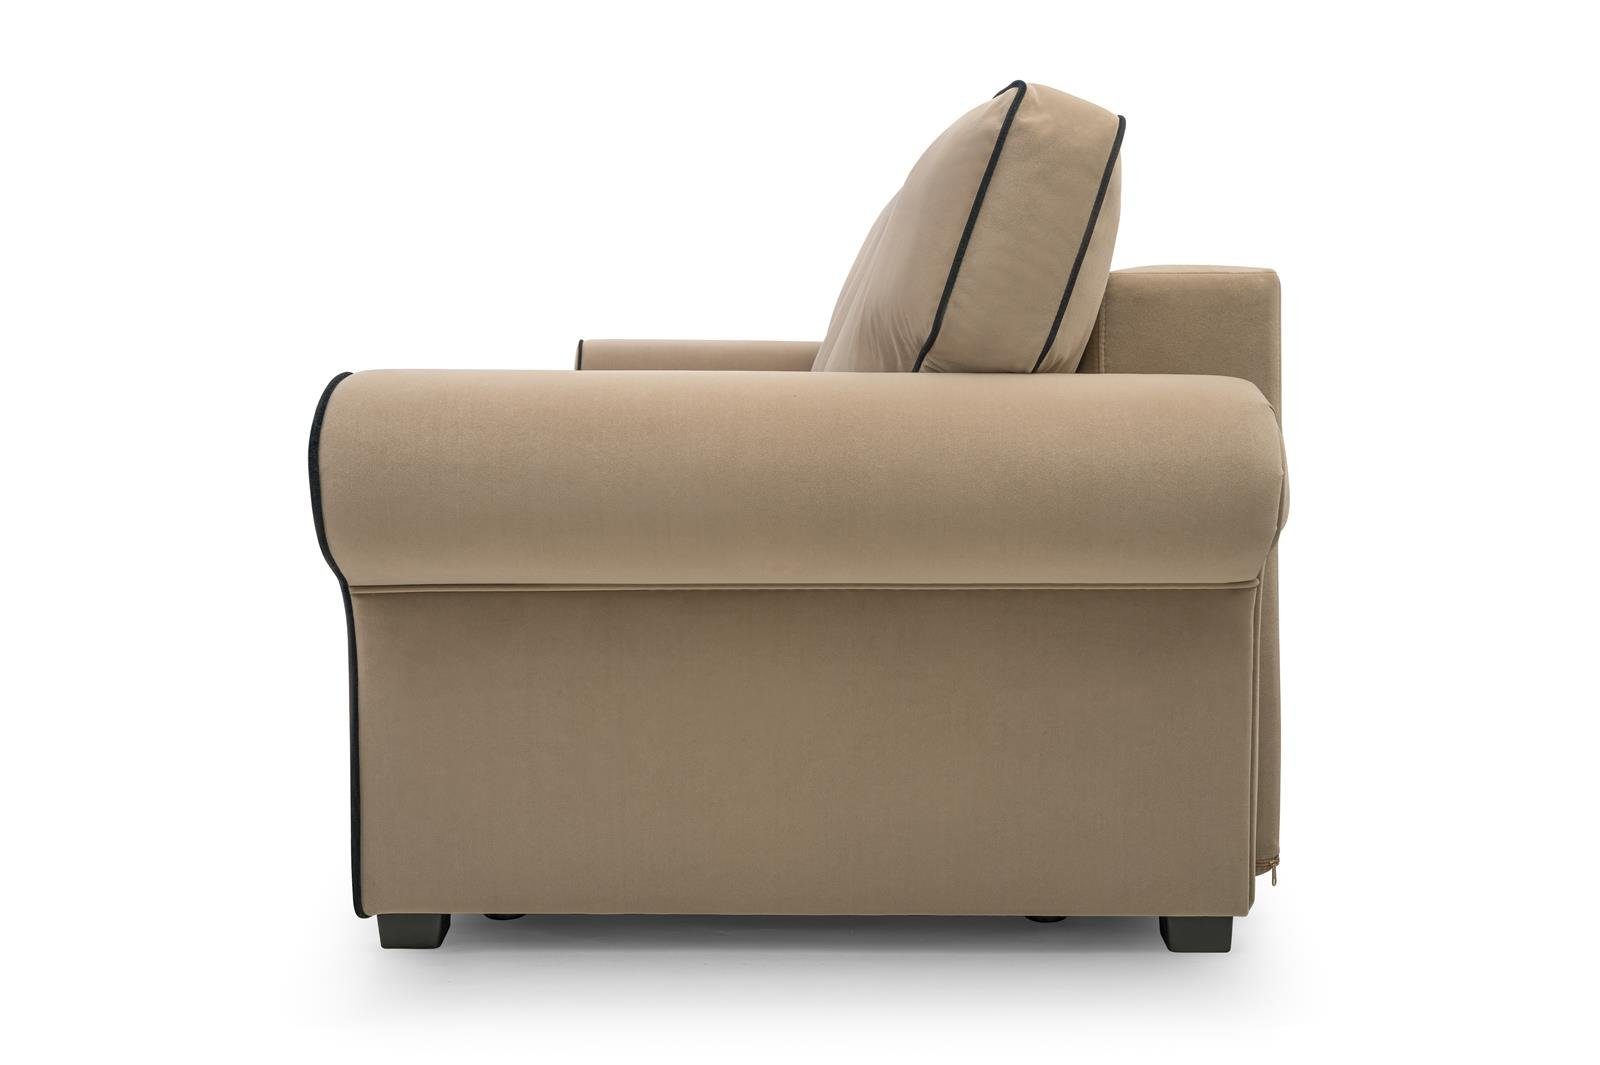 Beautysofa 3-Sitzer BELLO, in Hellbraun inklusive für Schlaffunktion + (mattvelvet Sofa Wohnzimmer, Veloursstoff, 09 99) aus Bettkasten, Dreisitzer Wellenfedern, Retro-Stil